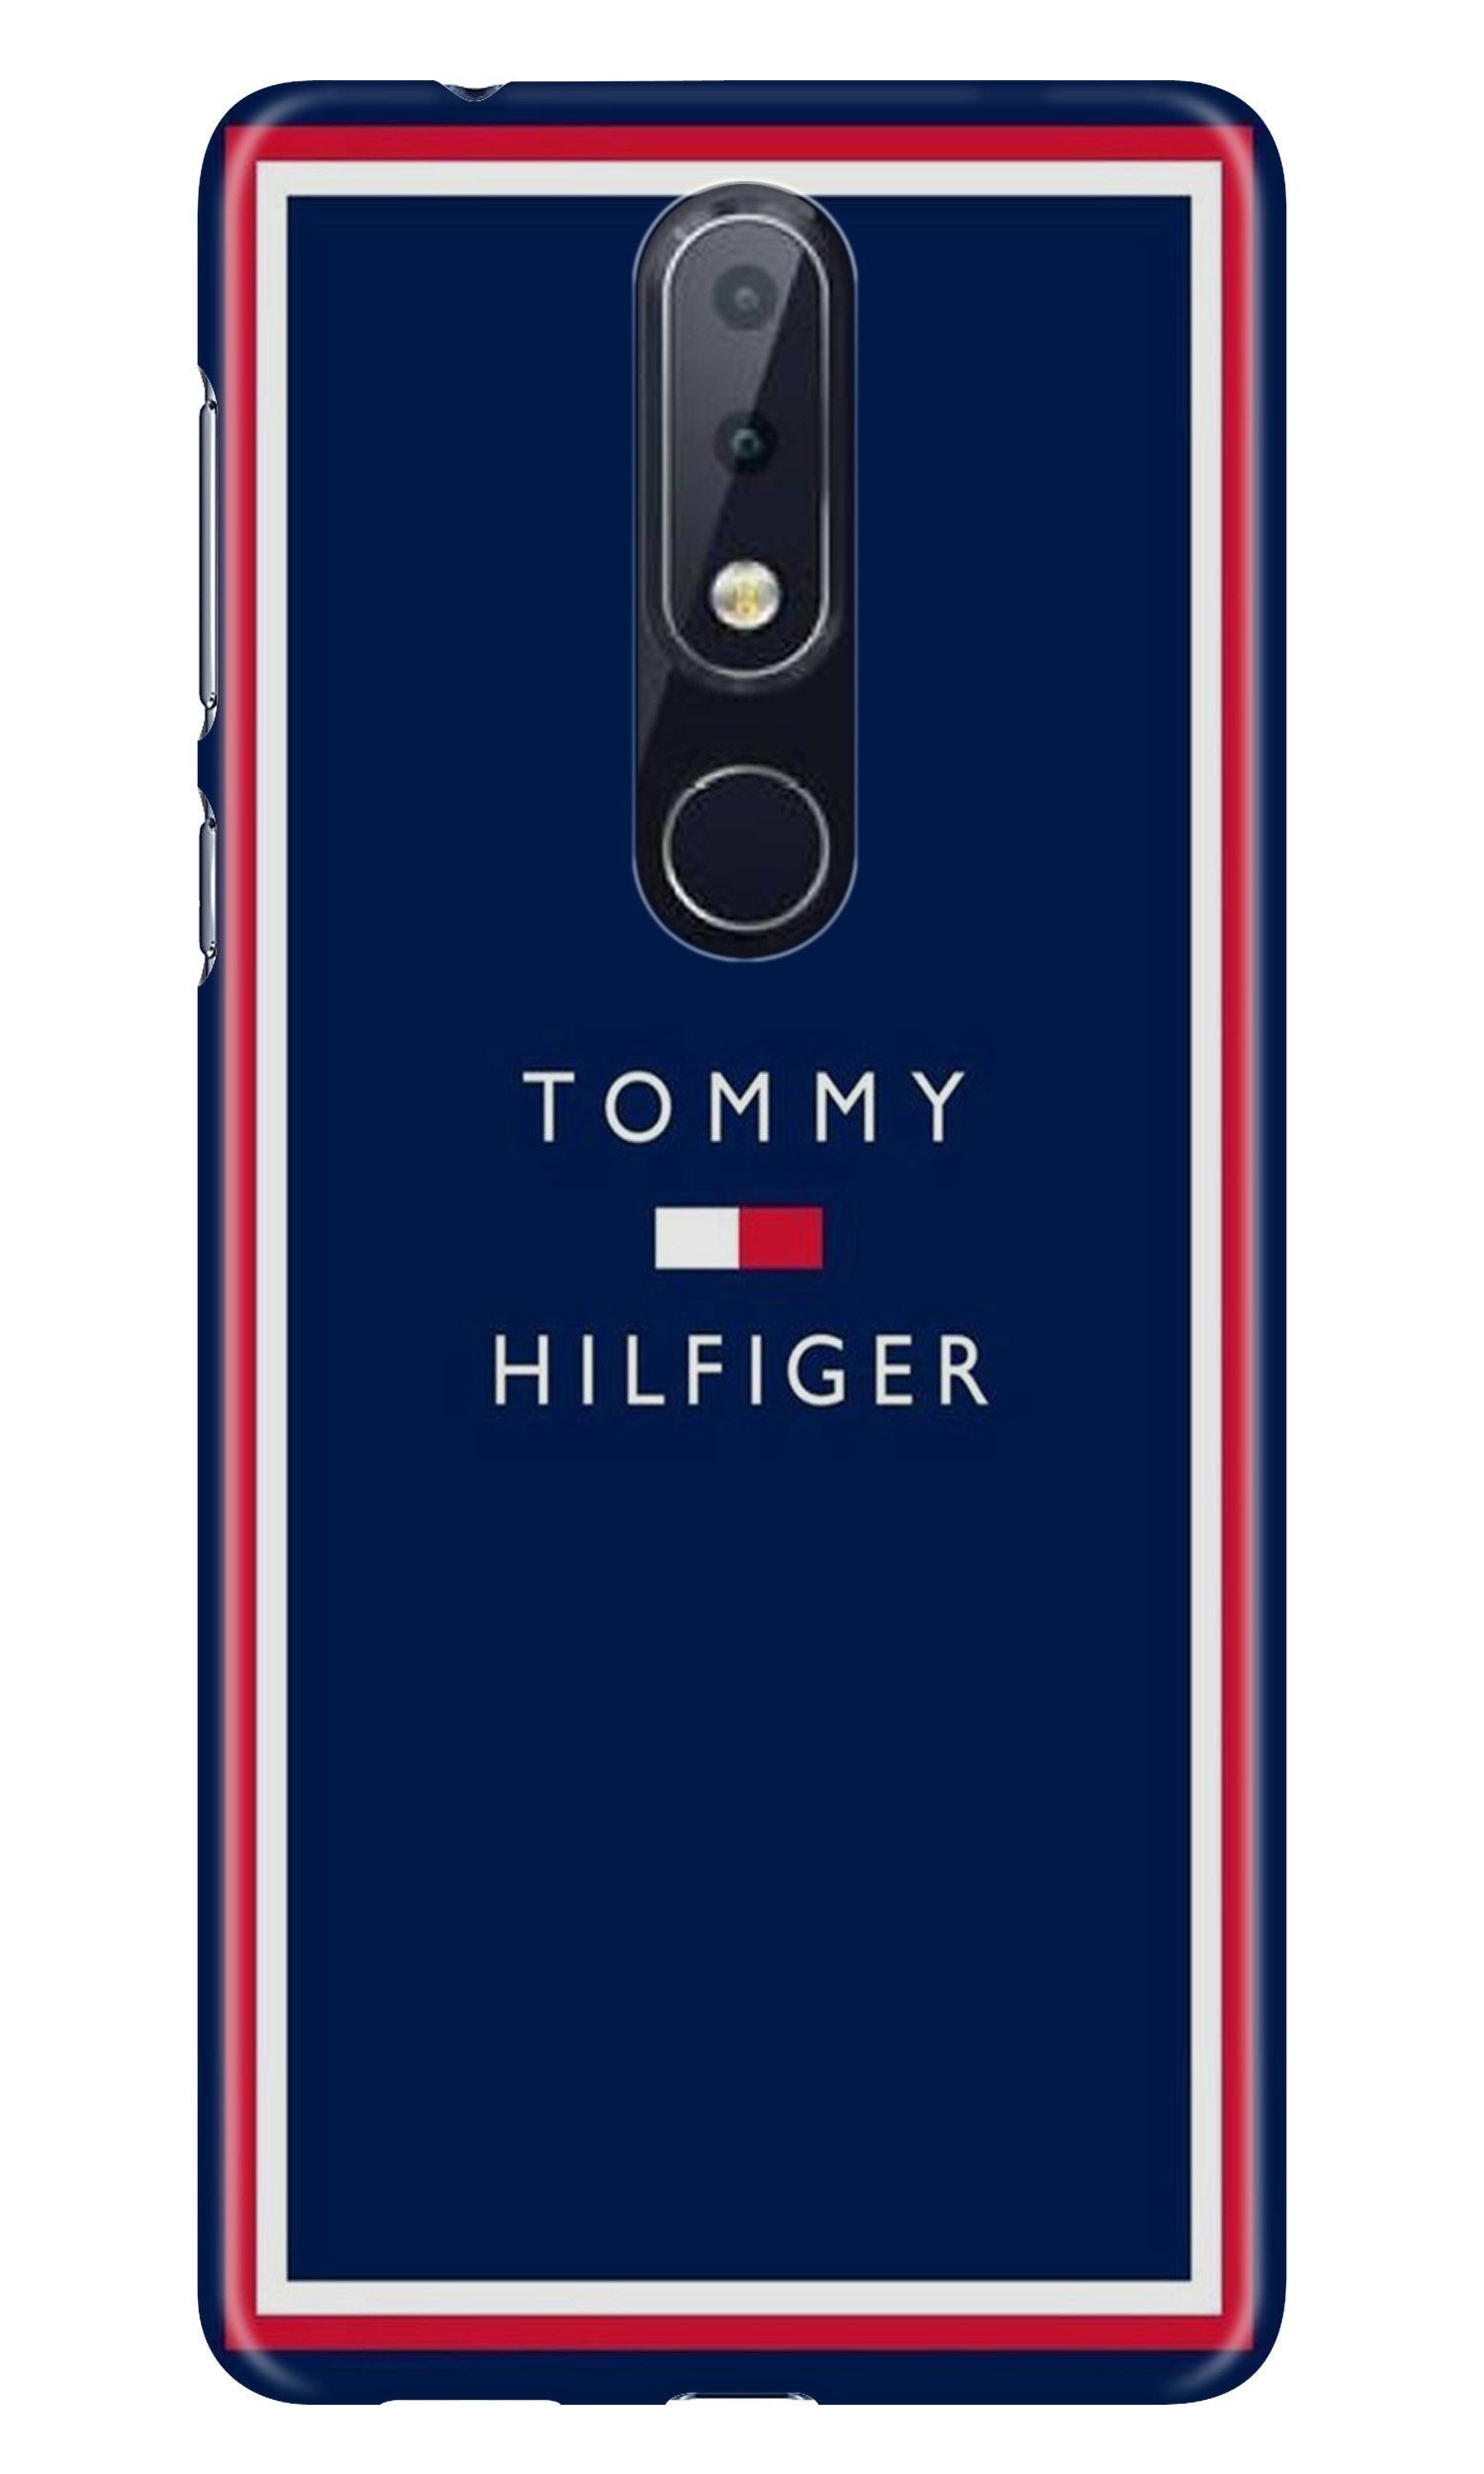 Tommy Hilfiger Case for Nokia 4.2 (Design No. 275)